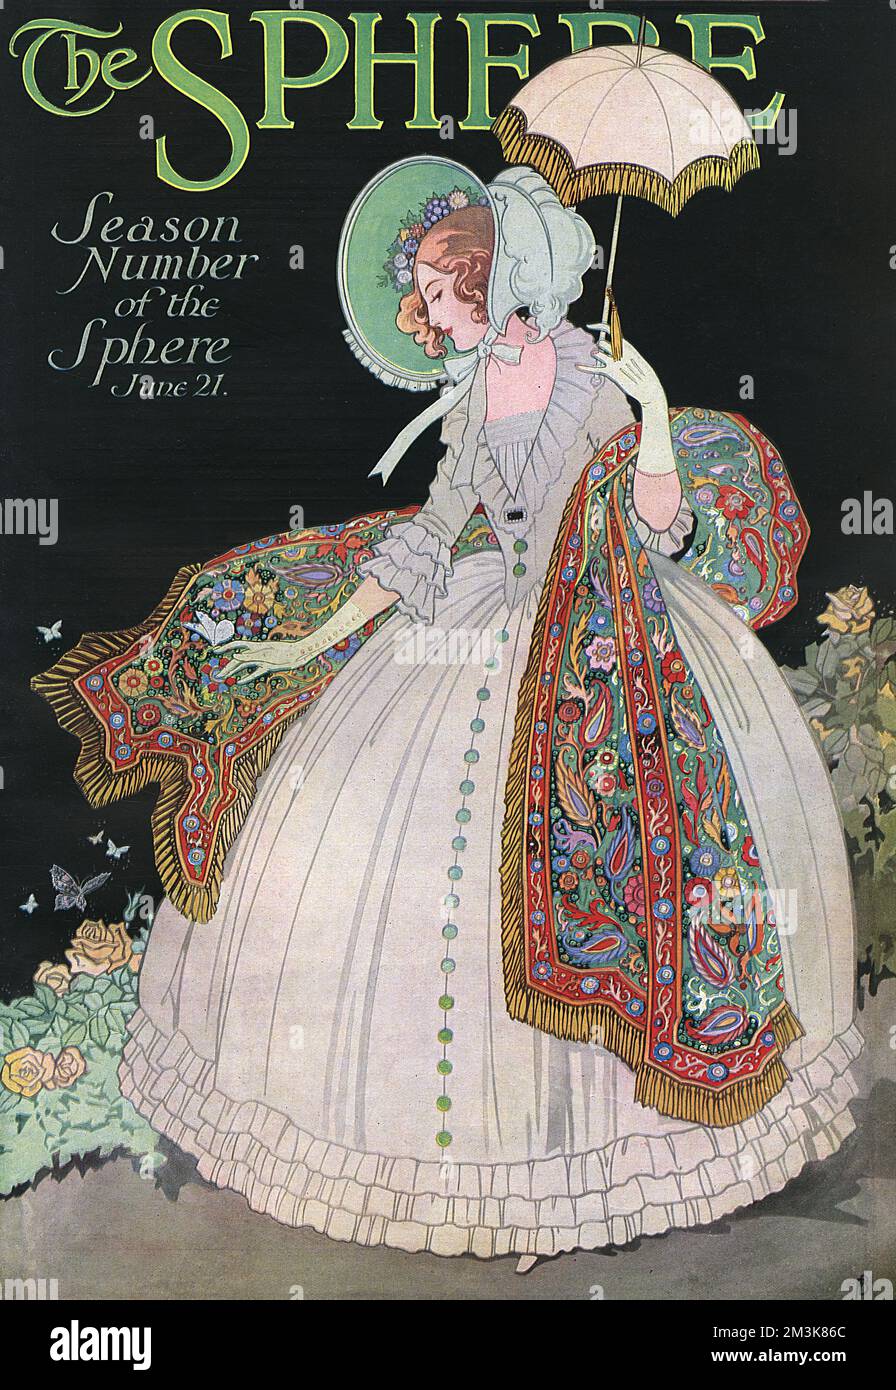 Illustration de la couverture avant du numéro de saison estivale 1924 de la sphère, avec une image stylisée d'une dame victorienne avec capot, châle et parasol. 1924 Banque D'Images